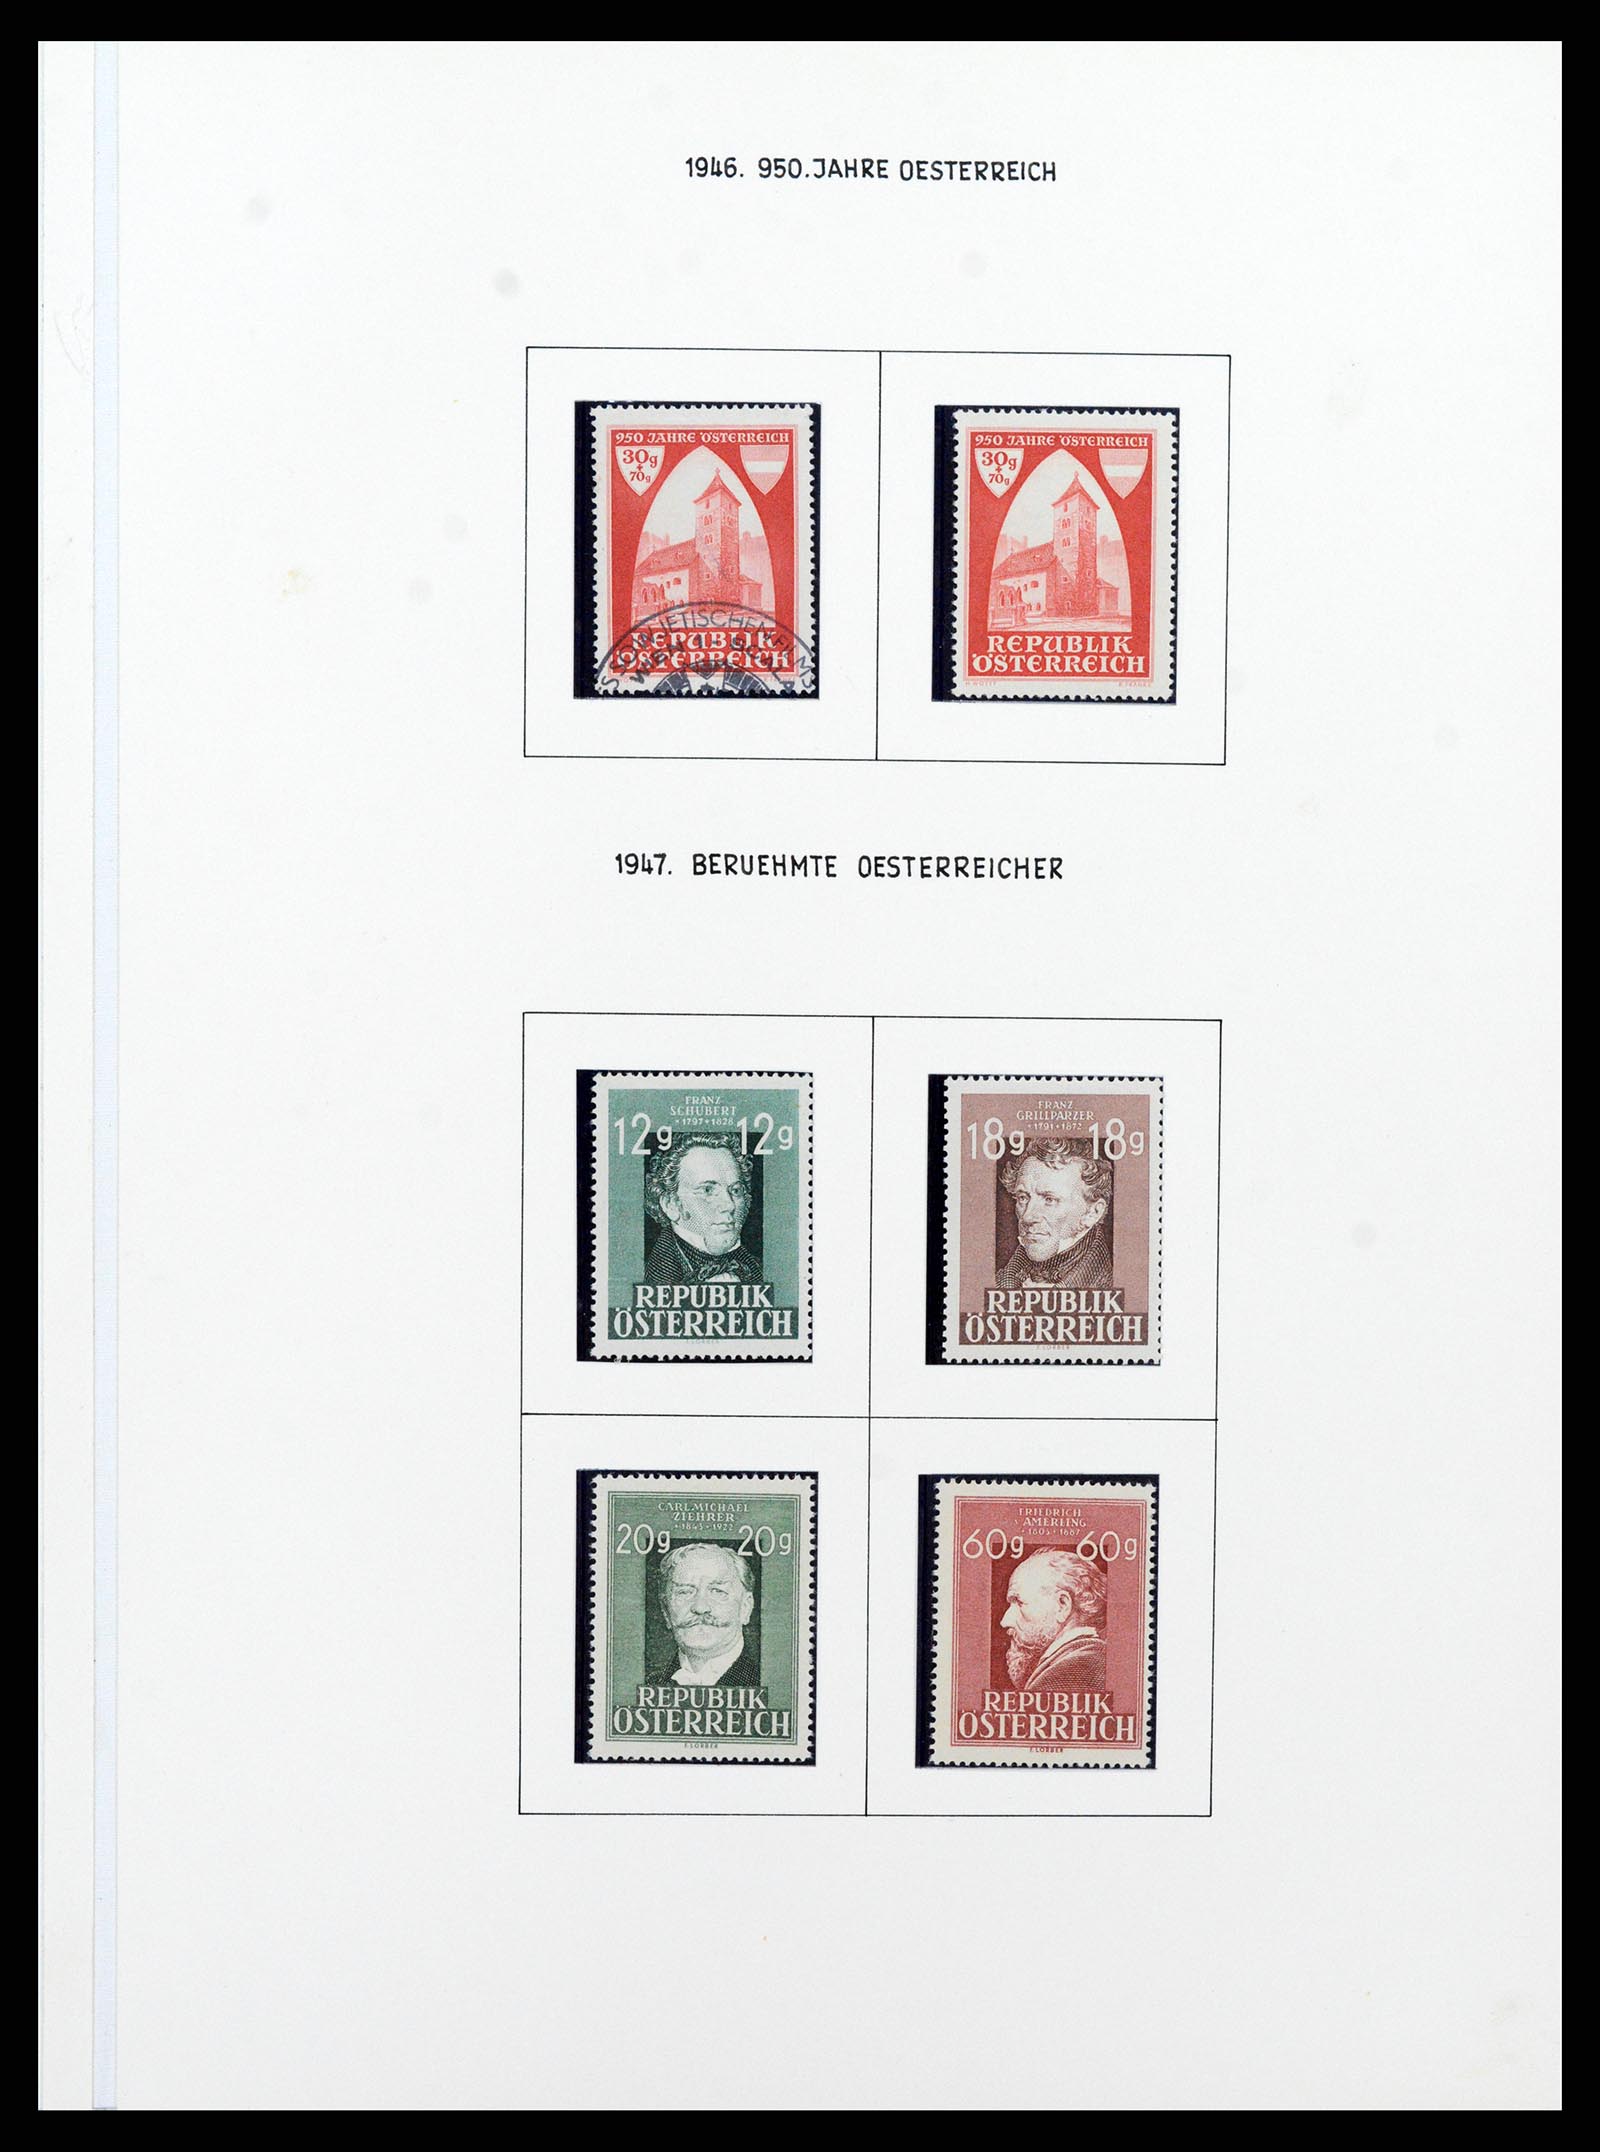 37090 592 - Postzegelverzameling 37090 Oostenrijk supercollectie 1850-1947.